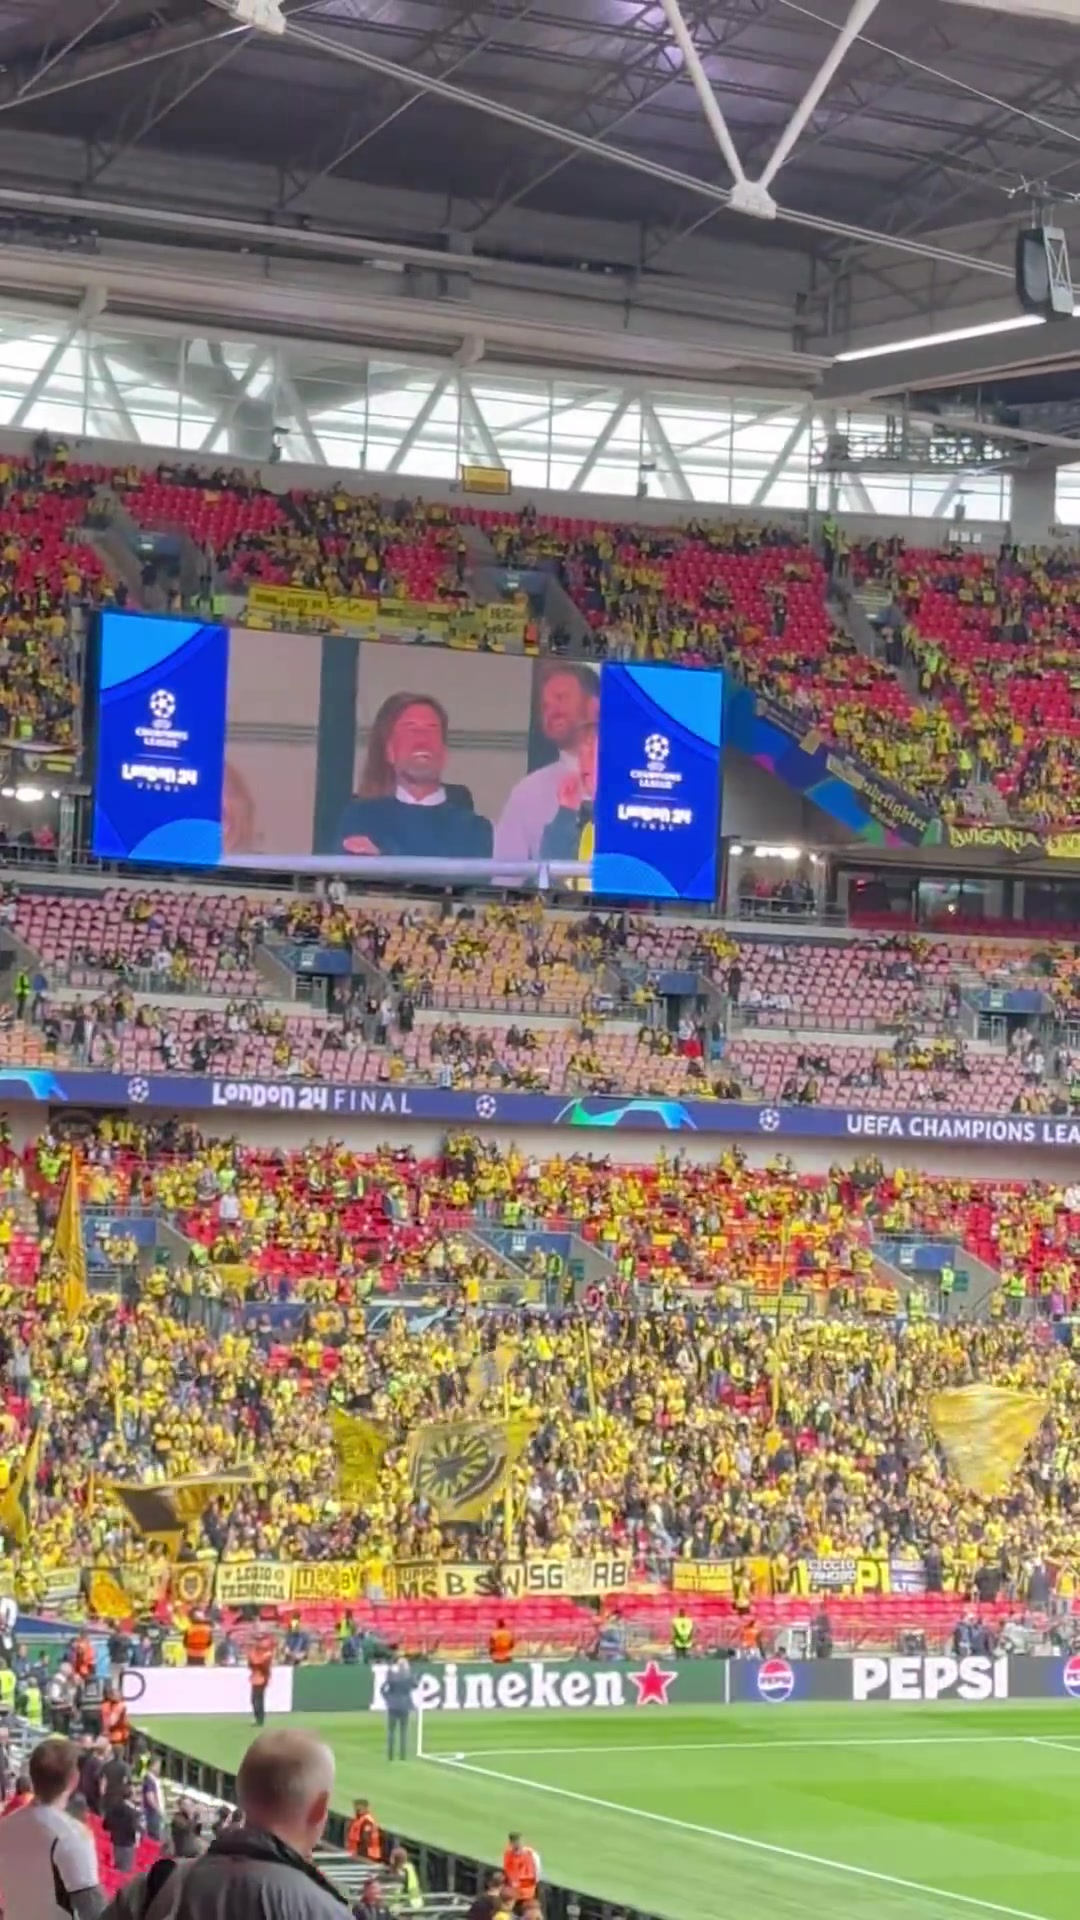 多特蒙德球迷在大屏幕上看到克洛普和穆里尼奥时的反应